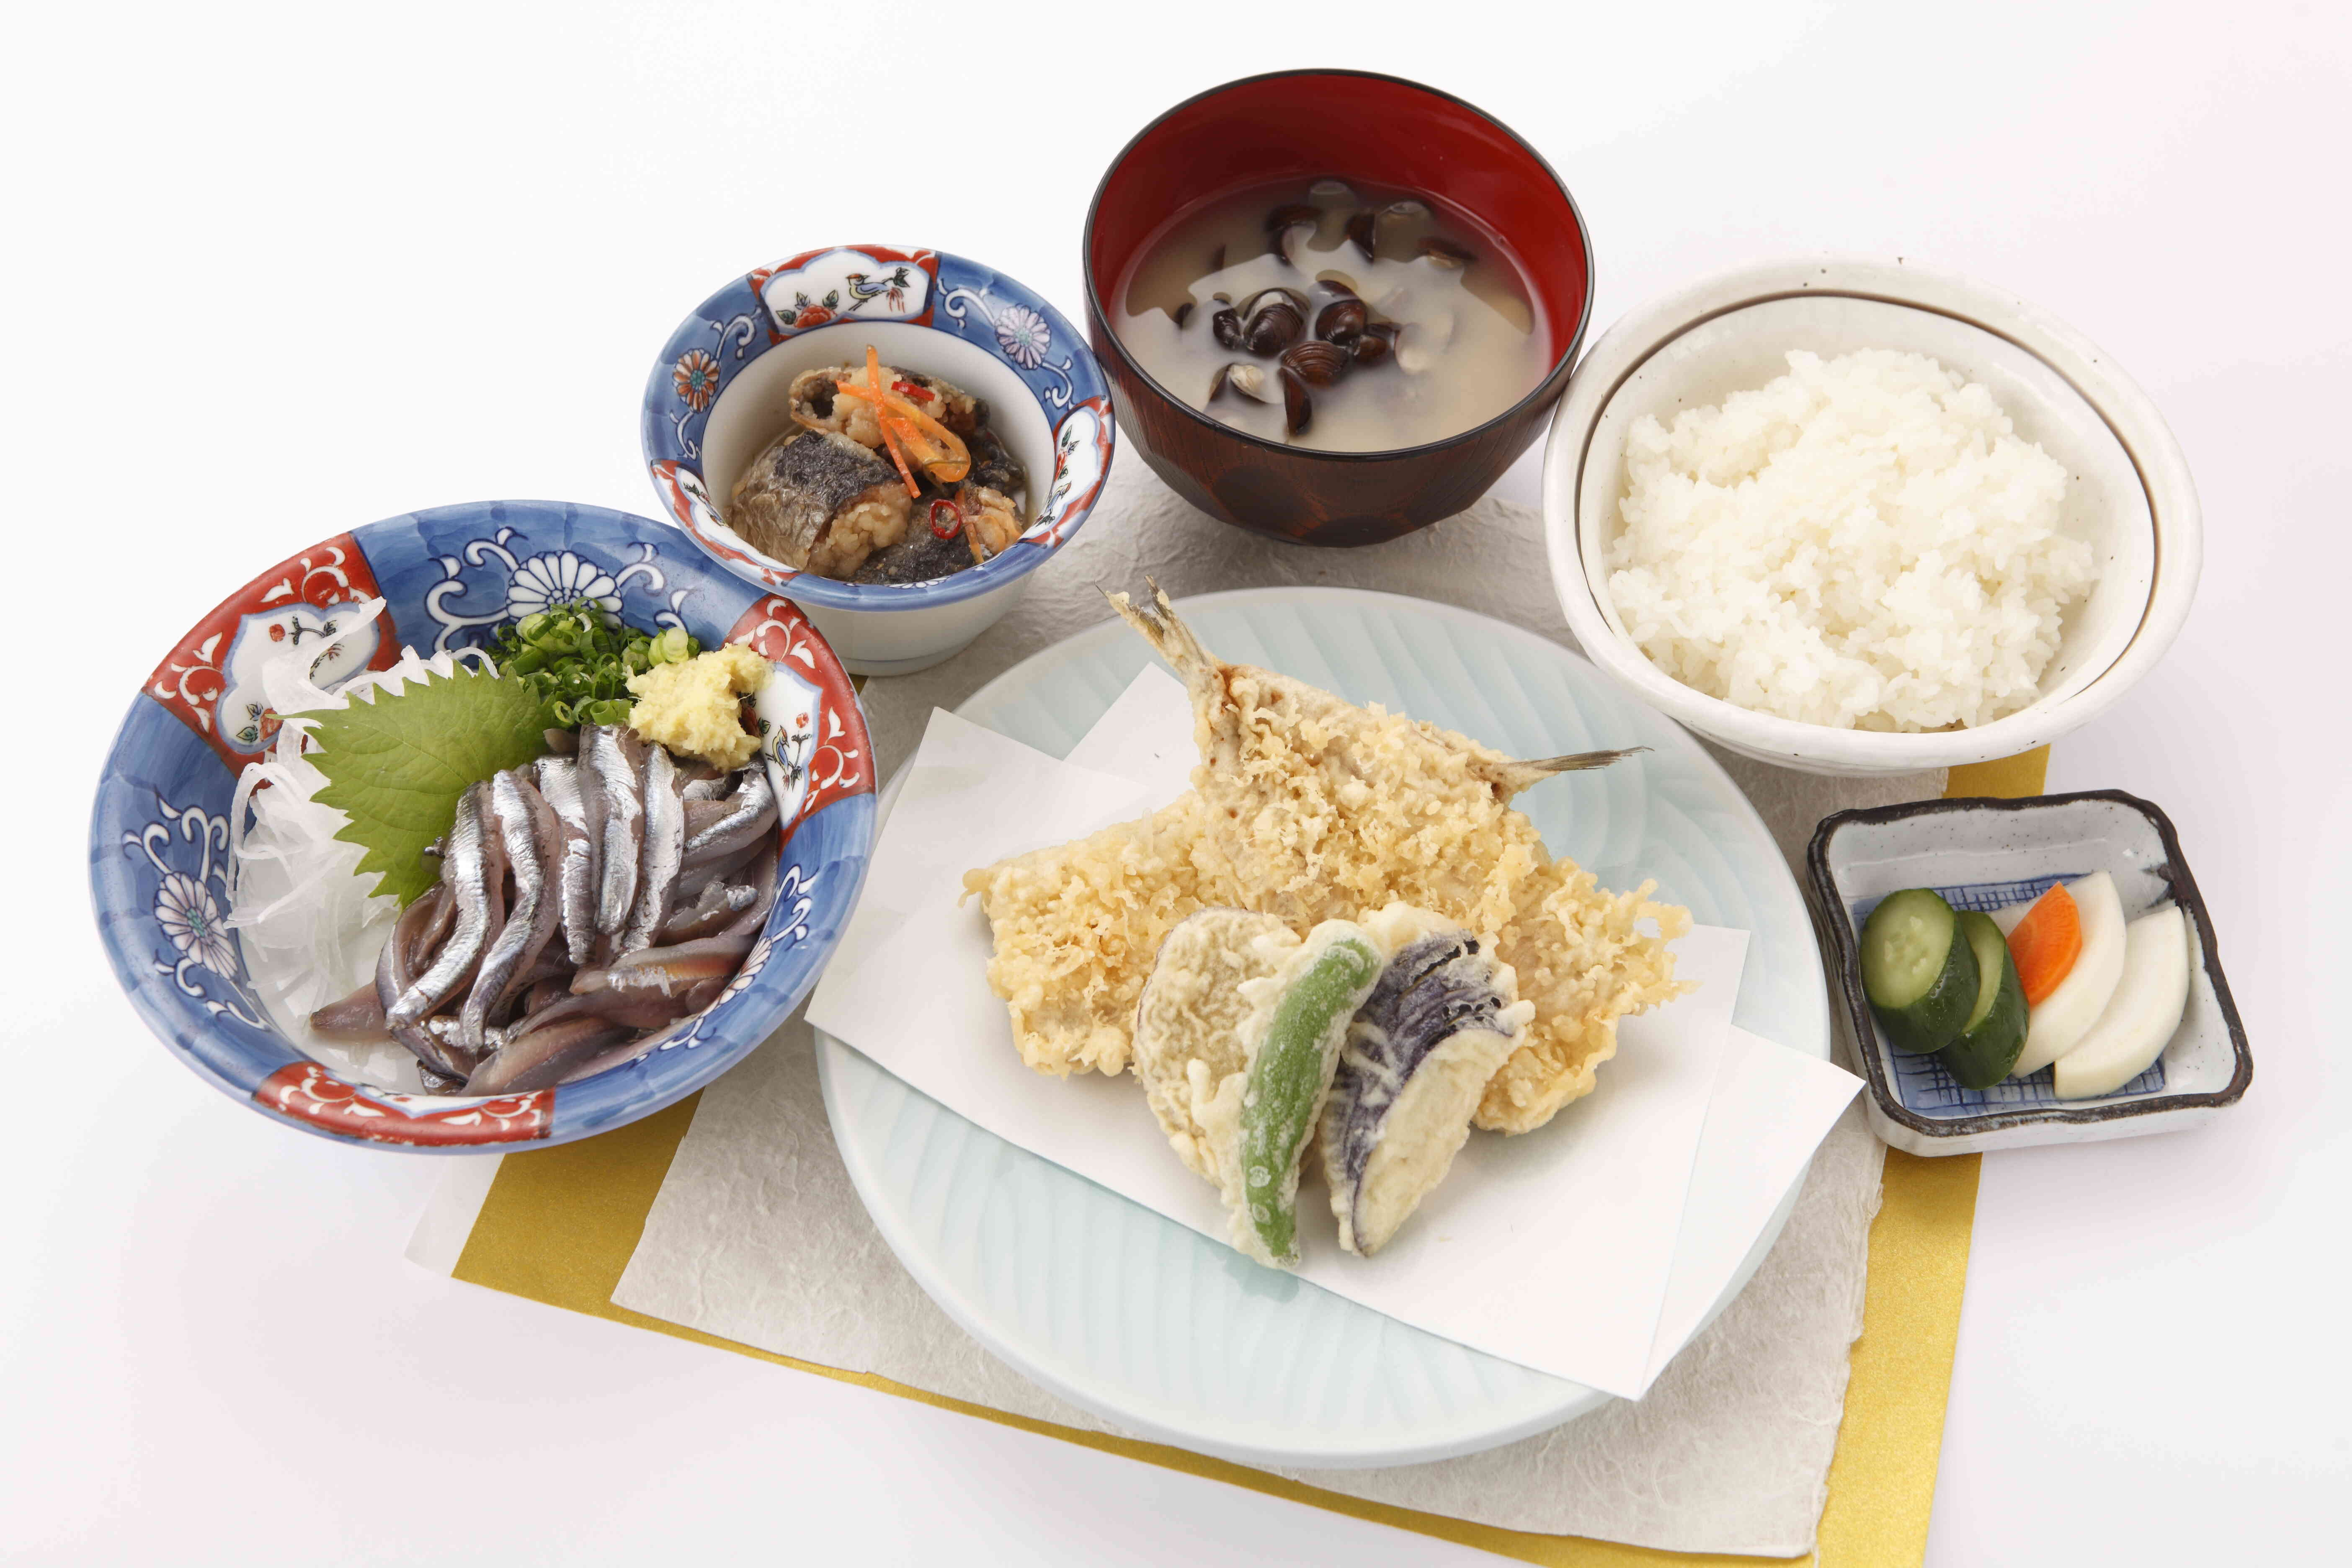 《大浜》(2，090円)
”定番 イワシの定食”で一番人気
